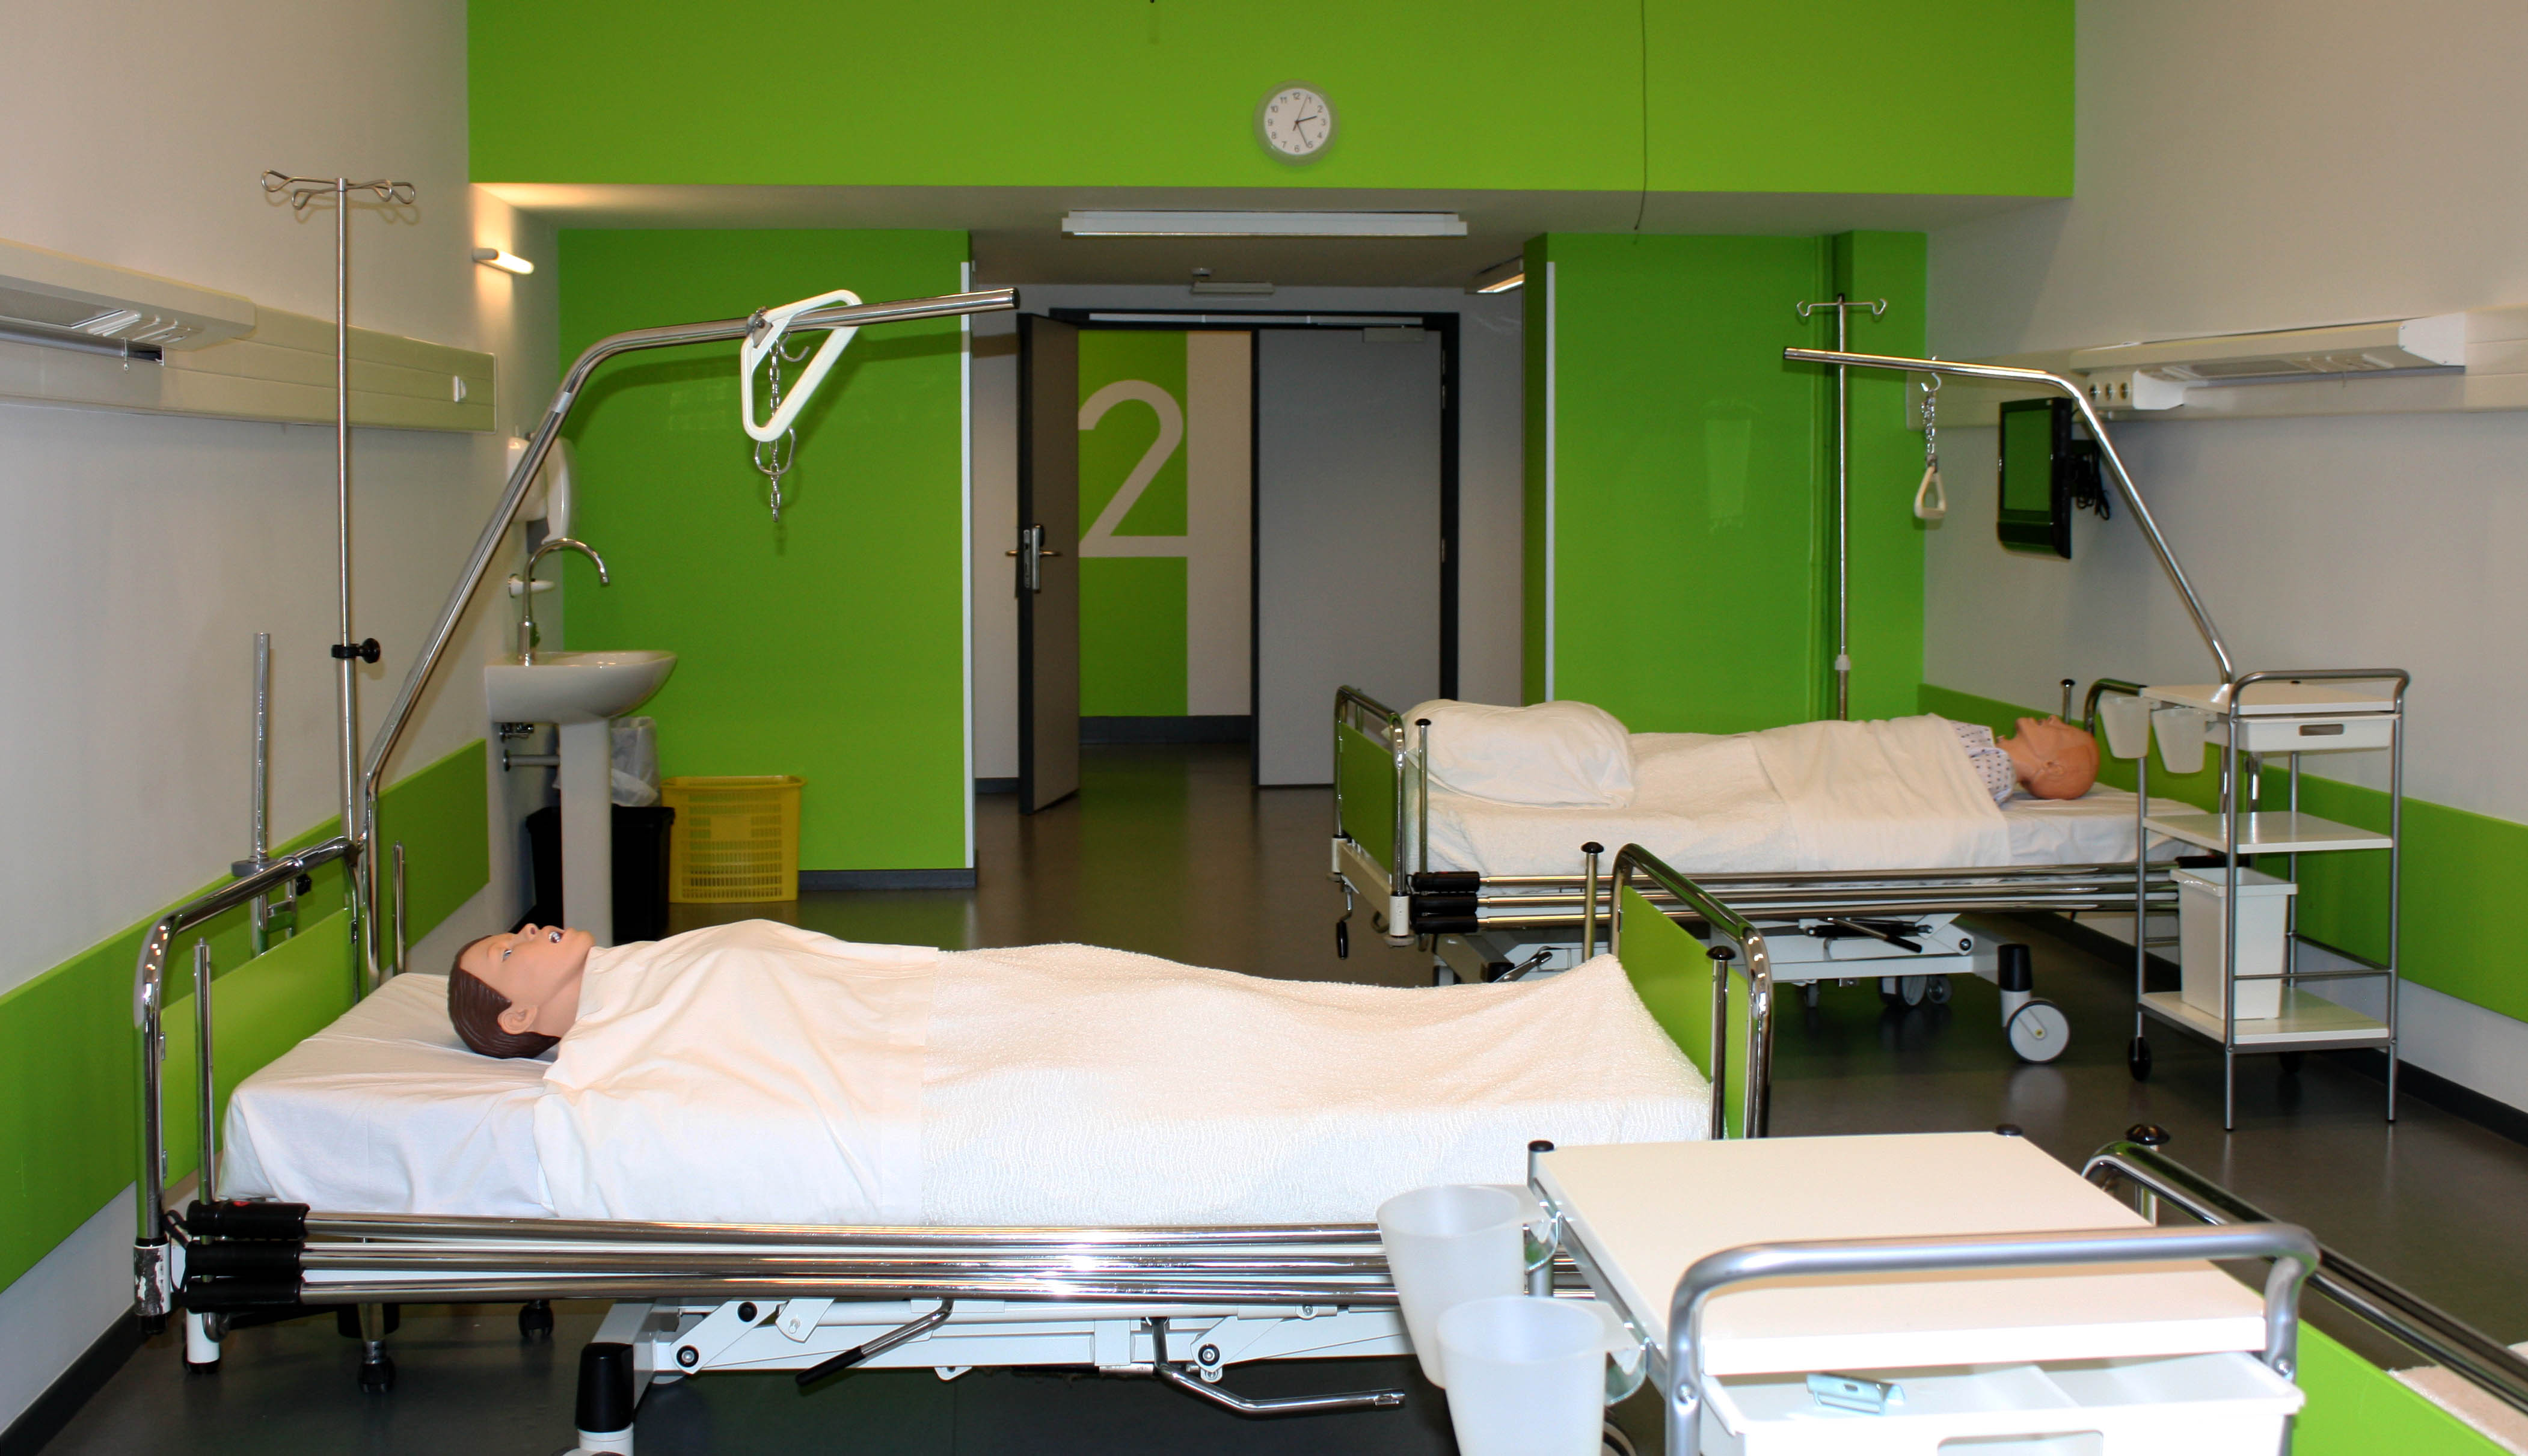 Salle verte avec des lits hôpitaux